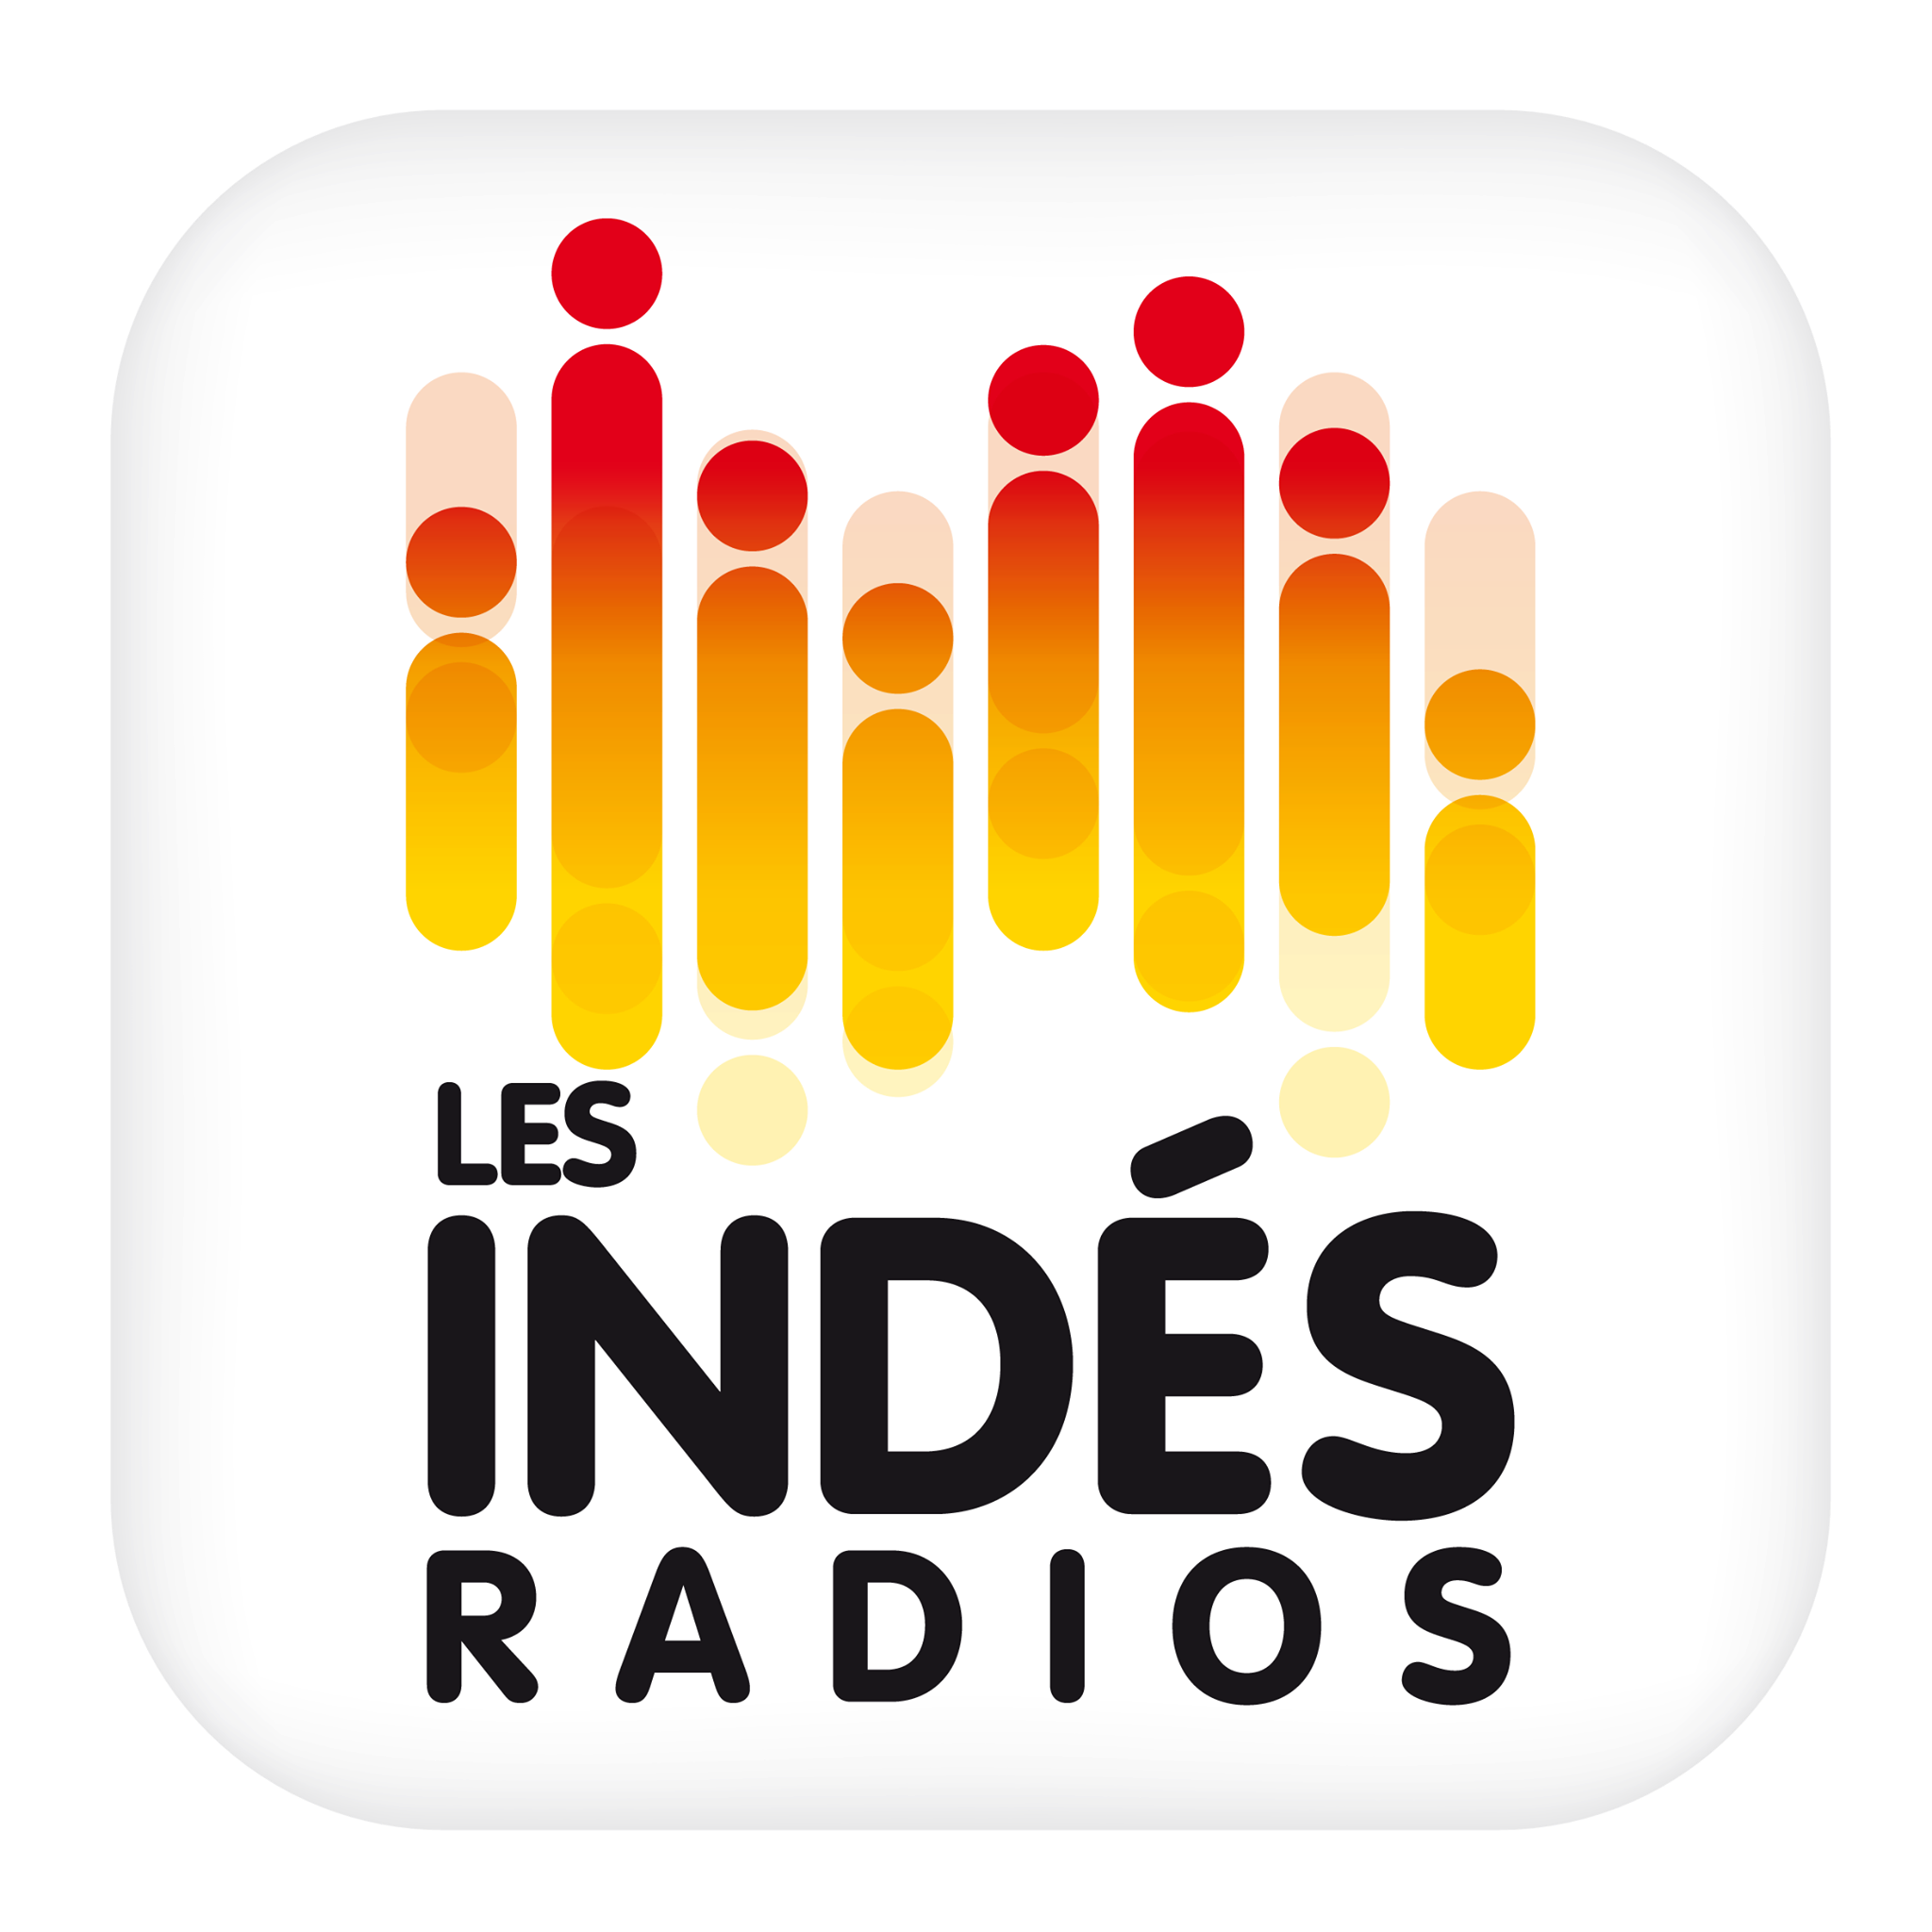 Audience numérique : les Indés Radios 3e groupe de radios le plus écouté 